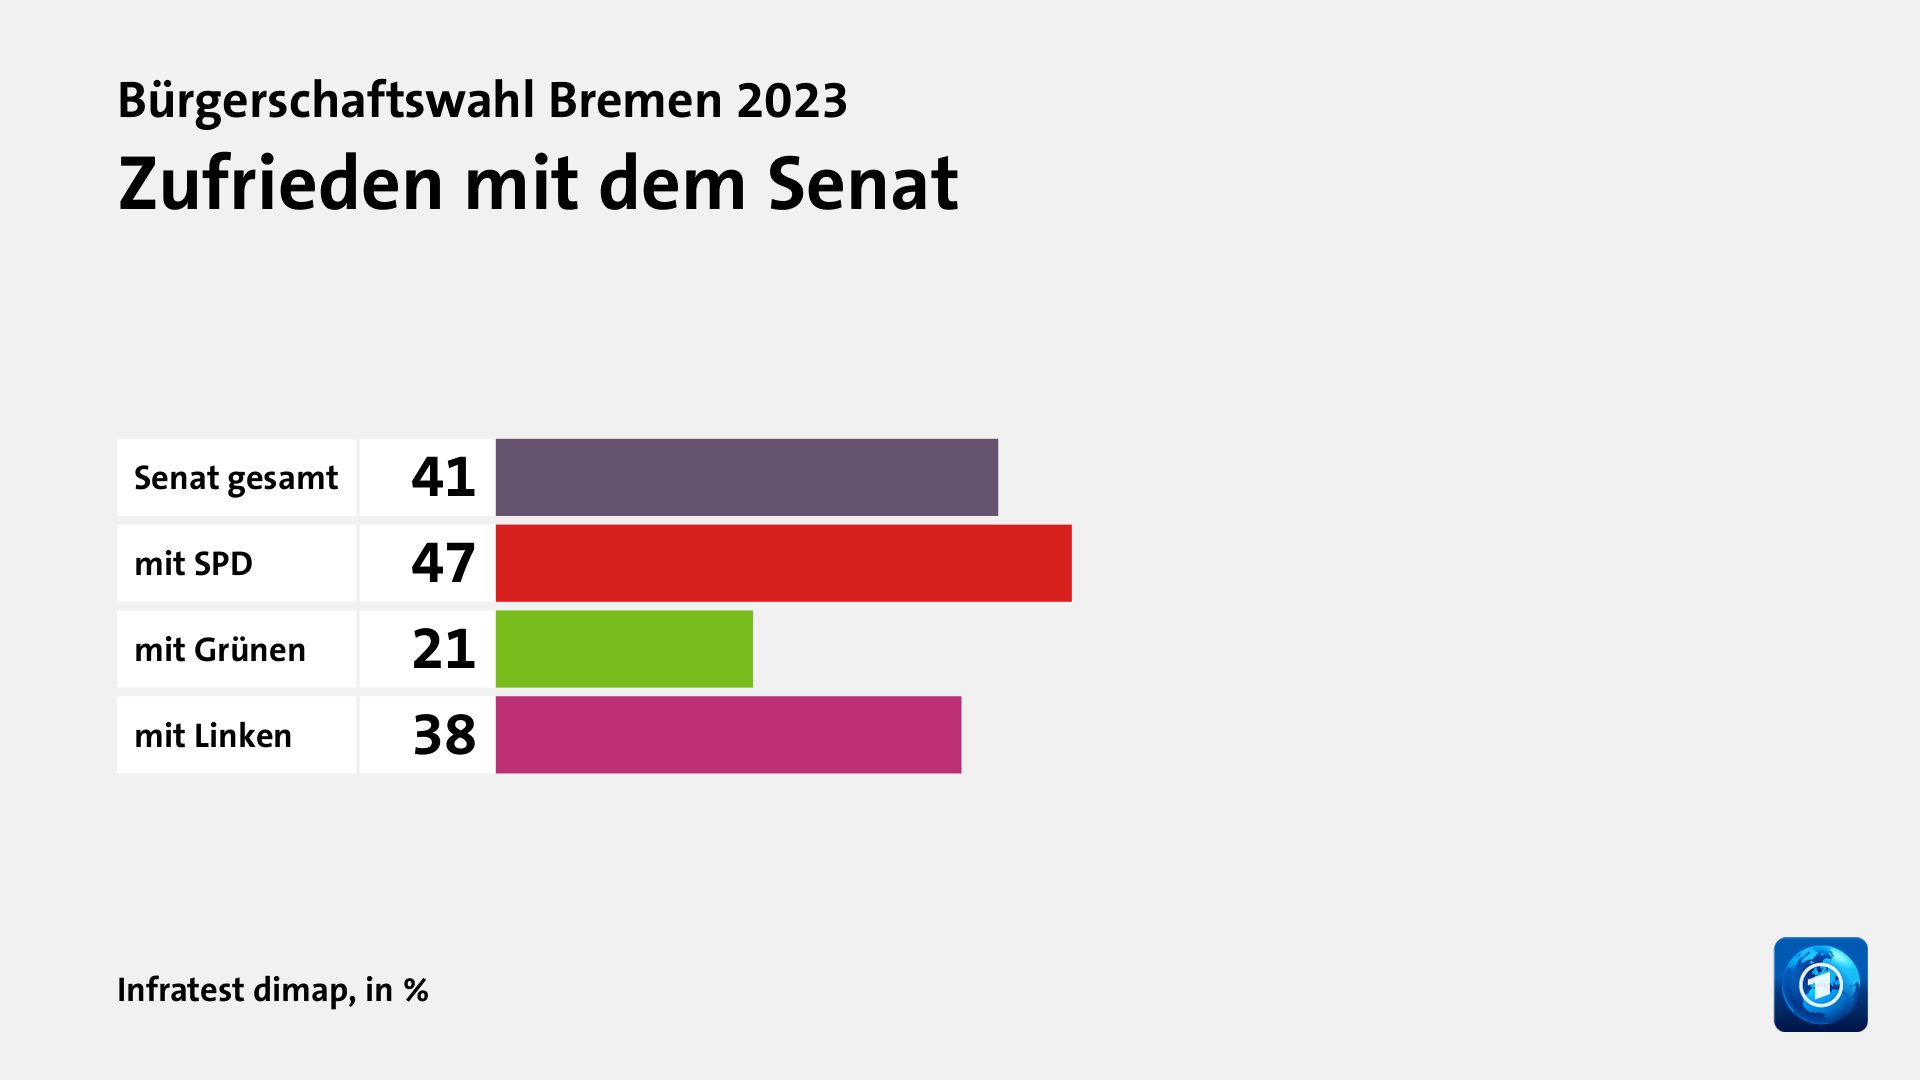 Zufrieden mit dem Senat, in %: Senat gesamt 41, mit SPD 47, mit Grünen 21, mit Linken 38, Quelle: Infratest dimap